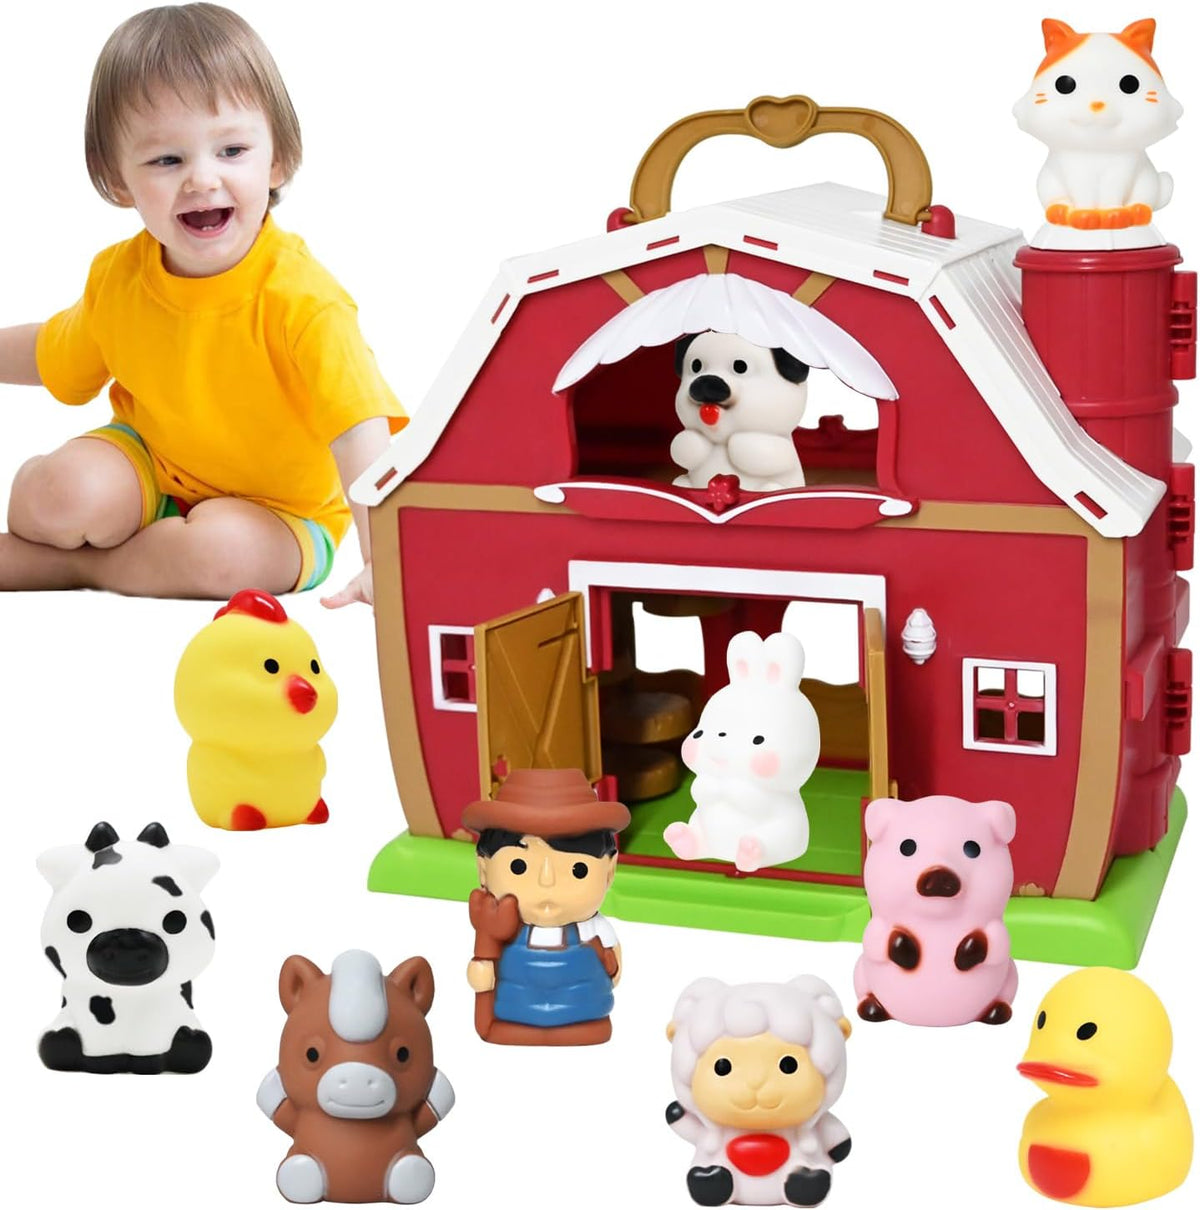 Big Red Barn Toy Farm Animal Finger Puppets, Pretend Farm Playset with Barn & Farmer